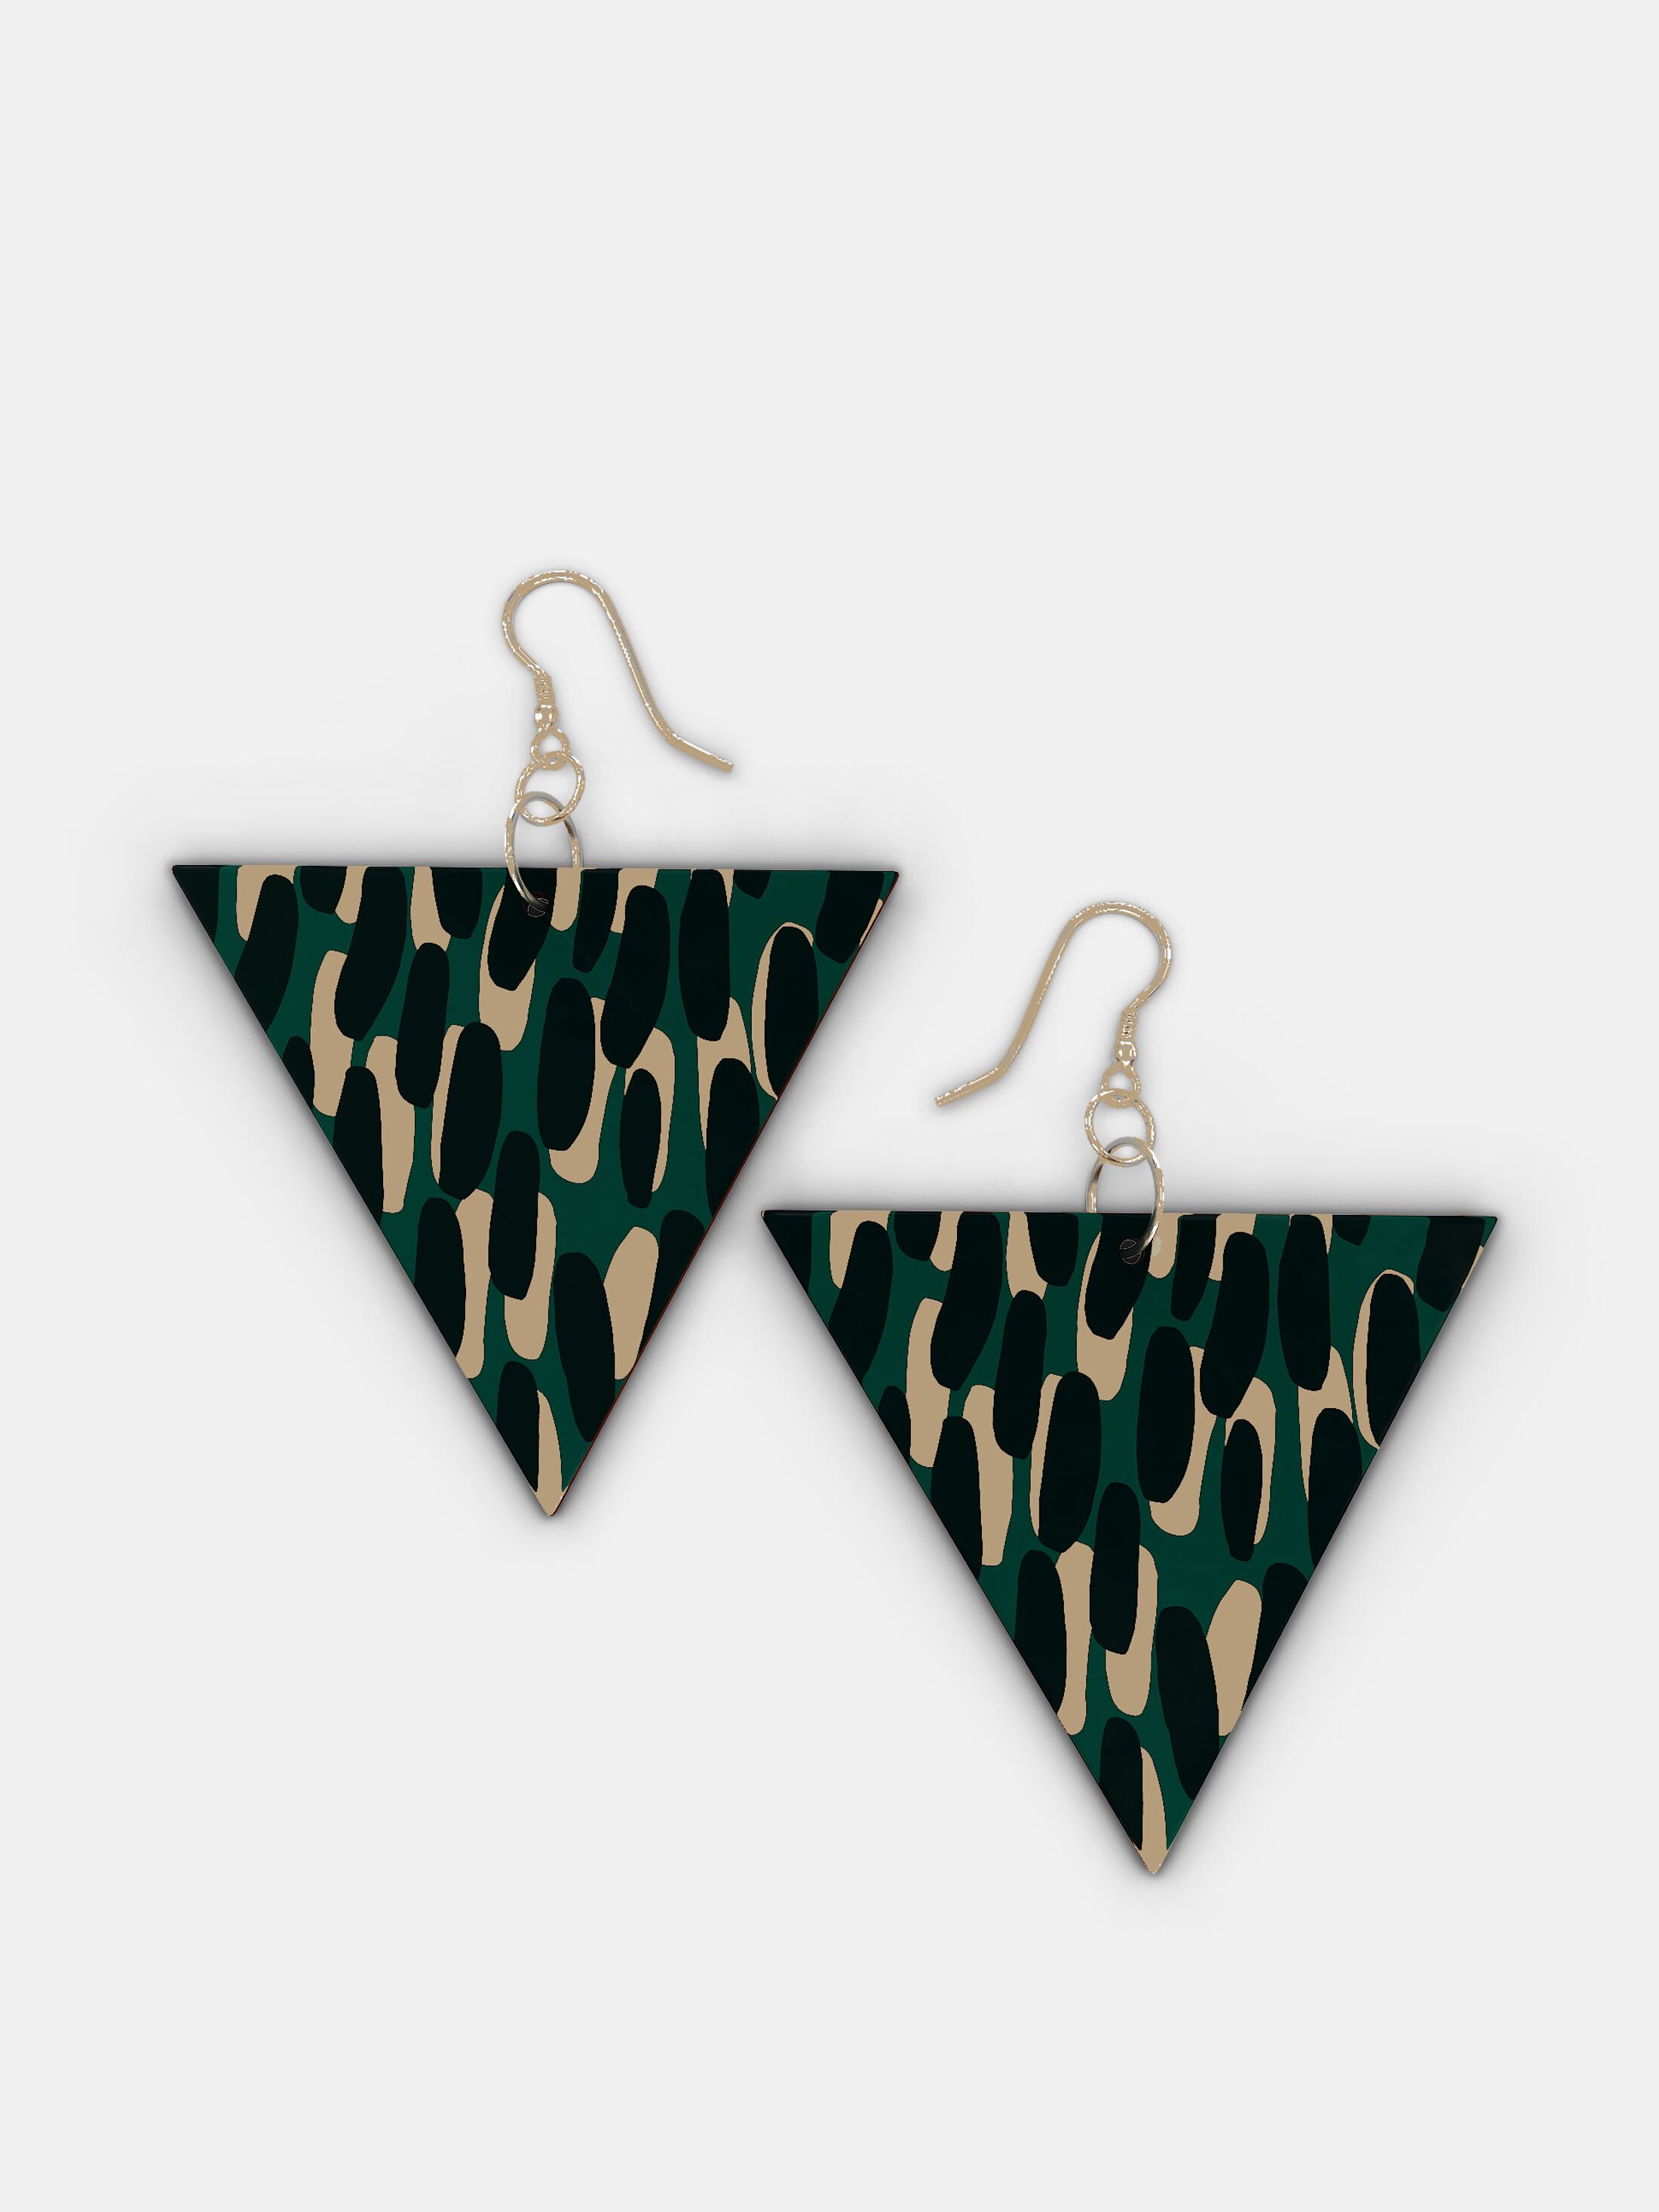 printed bespoke wooden earrings